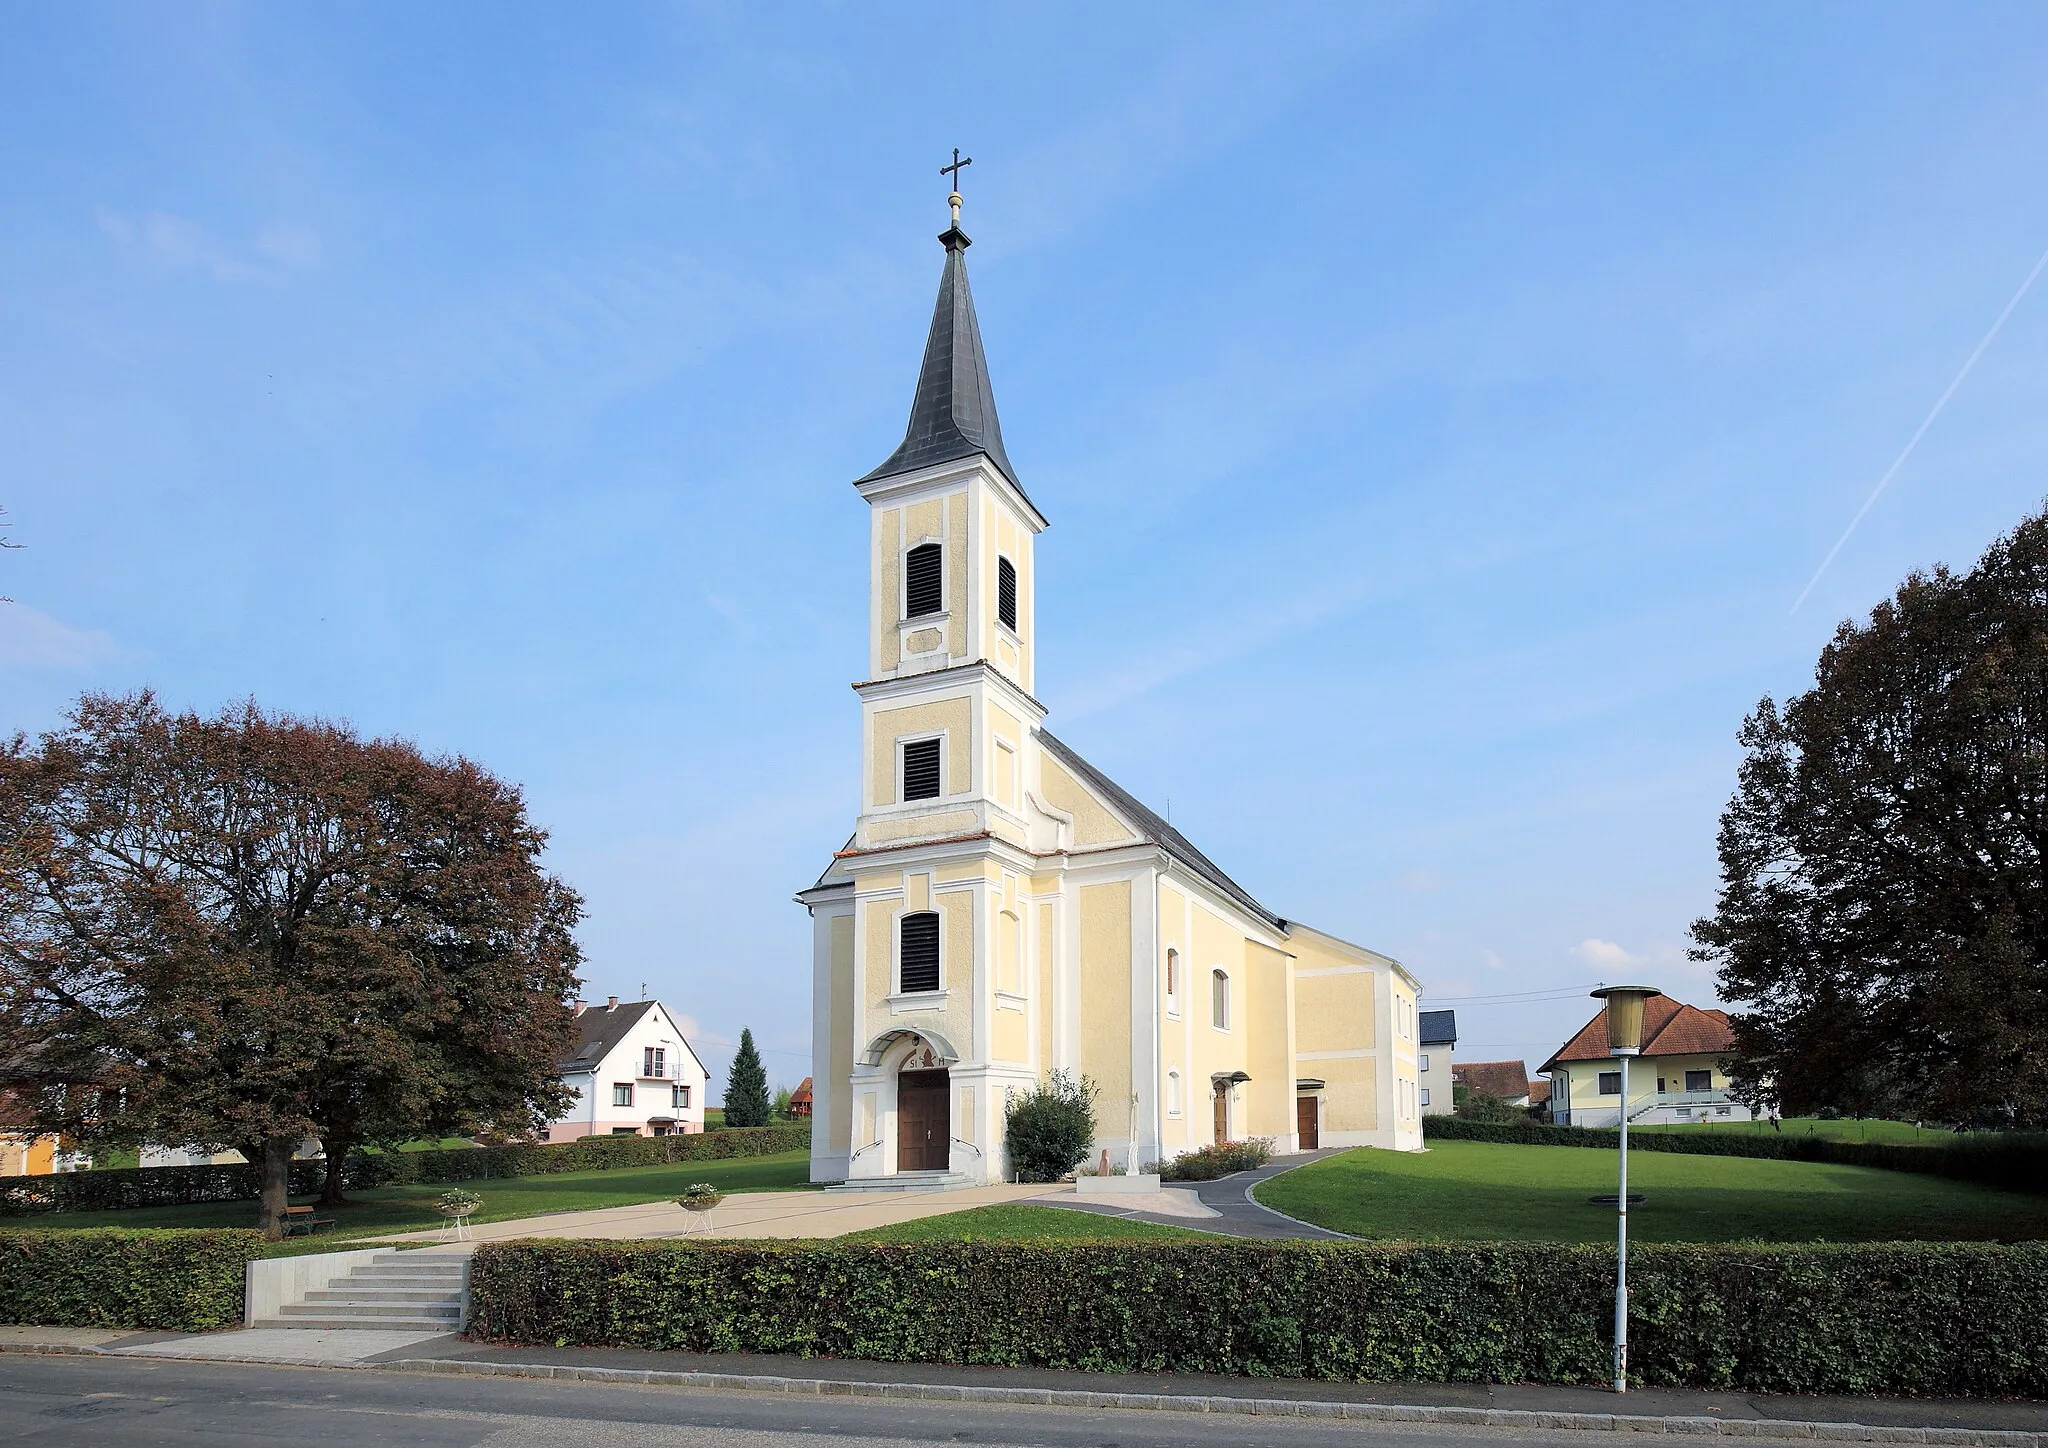 Photo showing: Westansicht der Pfarrkirche hl. Martin in Gerersdorf, ein Ortsteil der burgenländischen Gemeinde Gerersdorf-Sulz. Die Pfarrkirche mit einem vorgstellten viergeschossigen Westturm wurde 1810/11 errichtet.